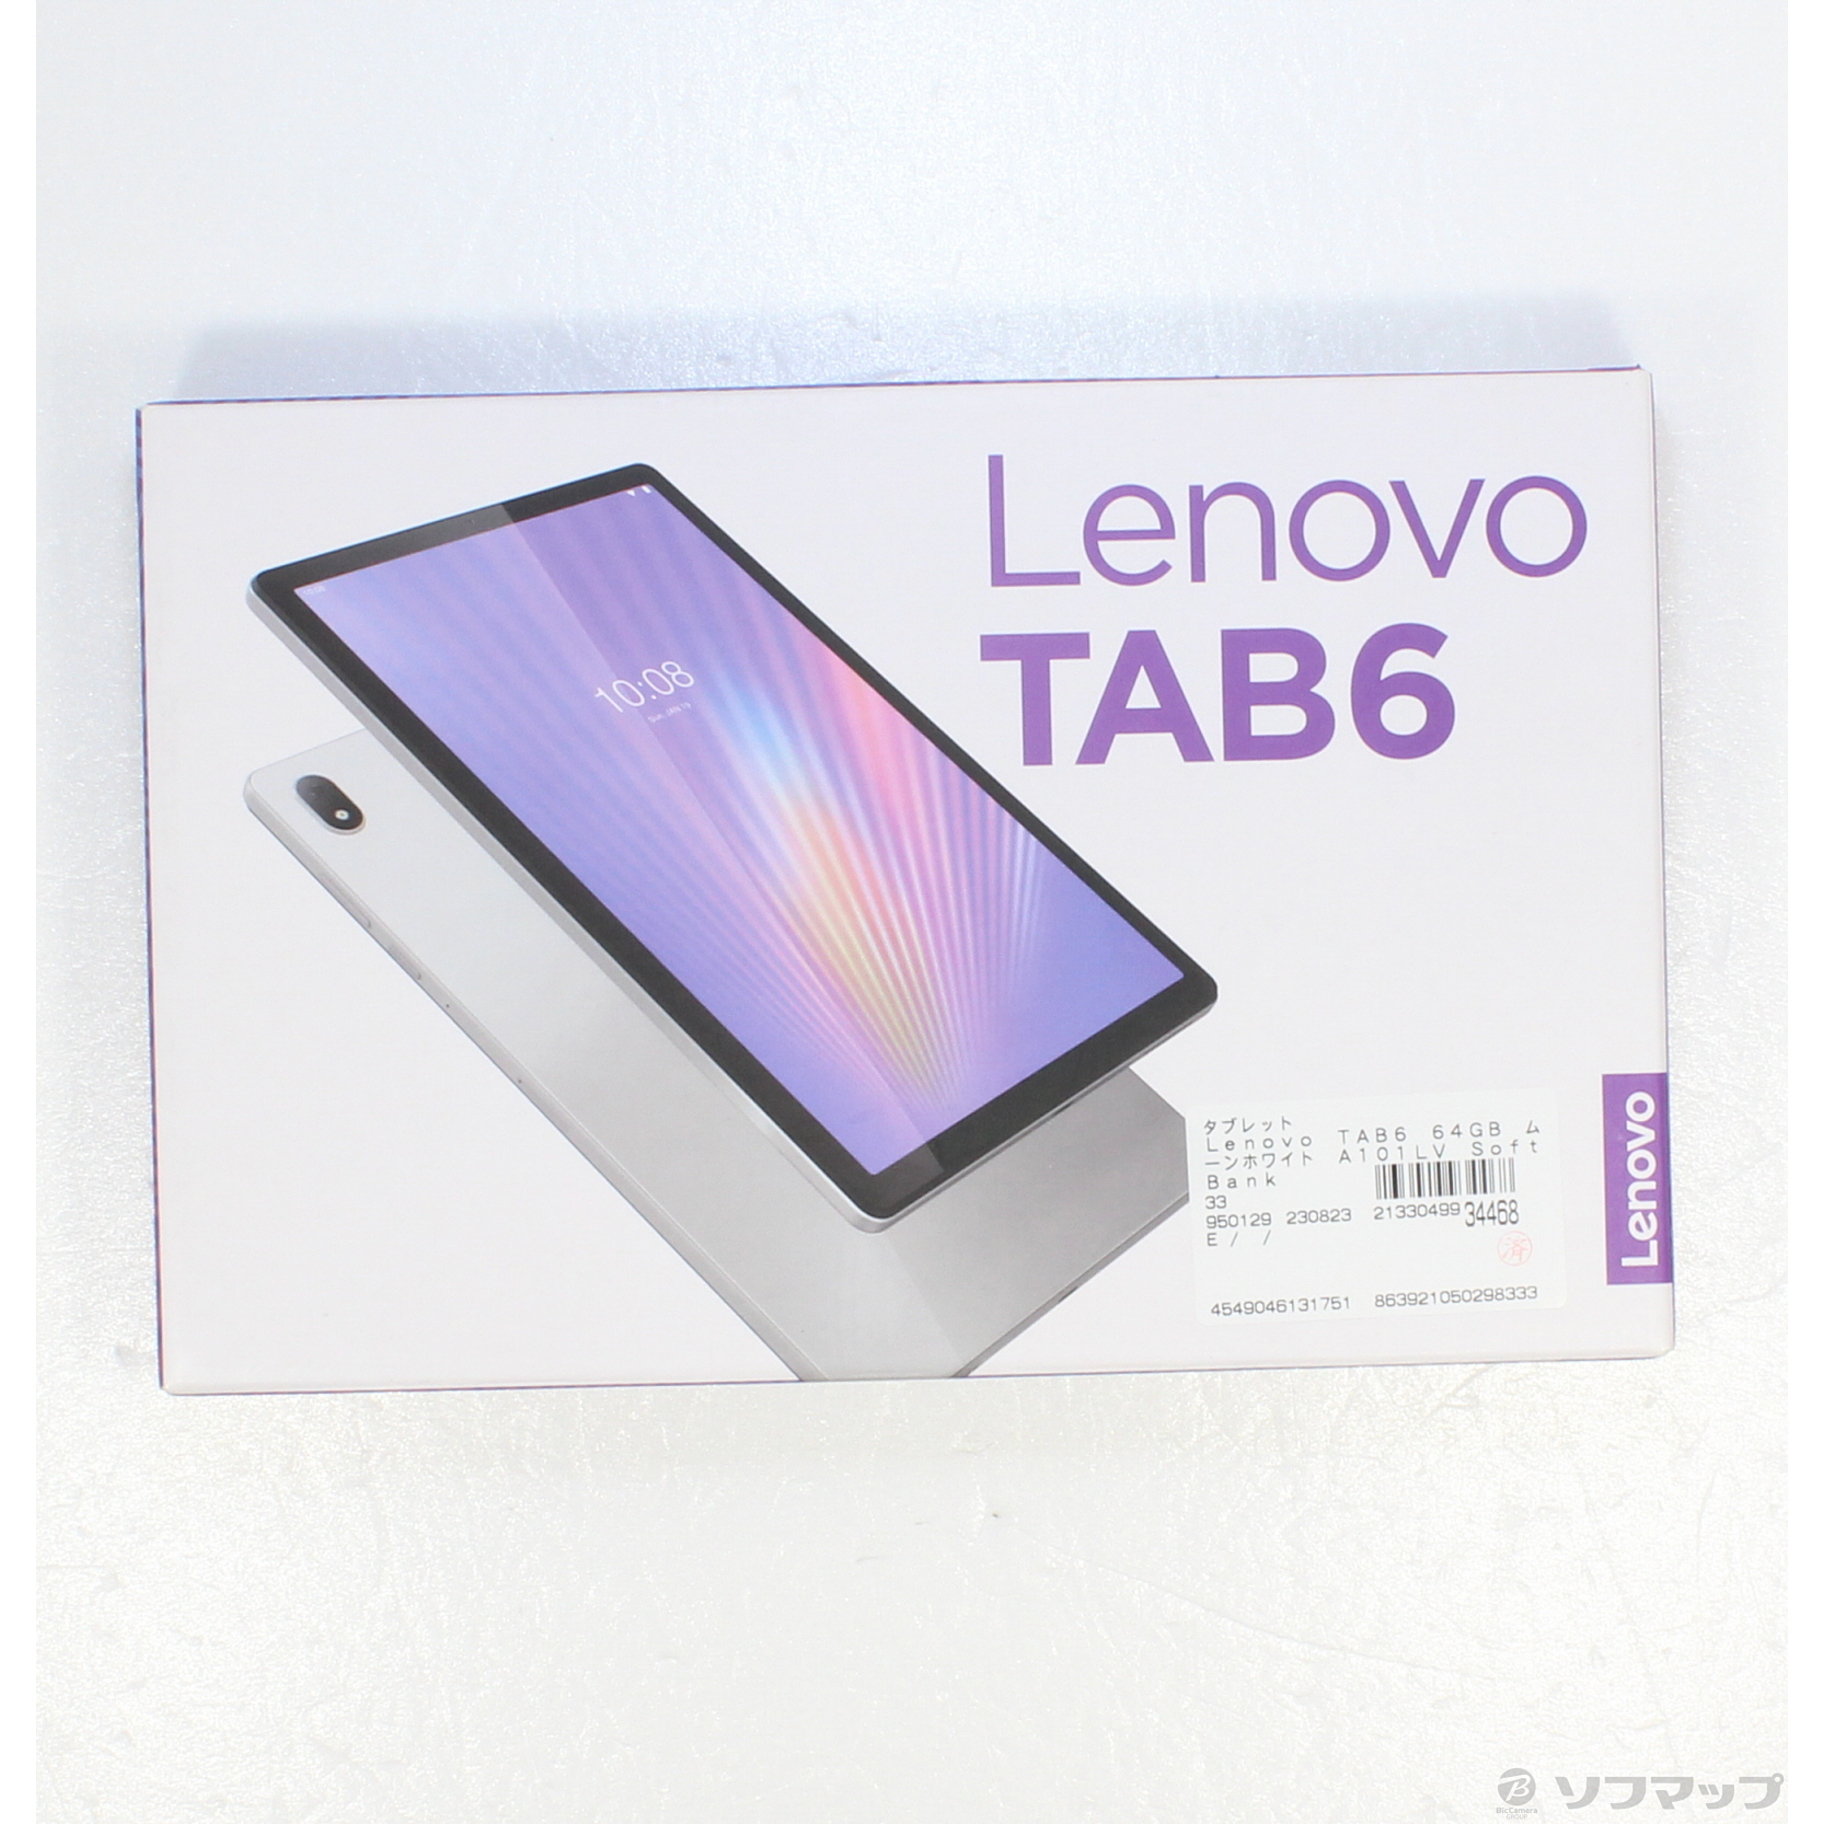 LenovoTAB6 ムーンホワイト - タブレット